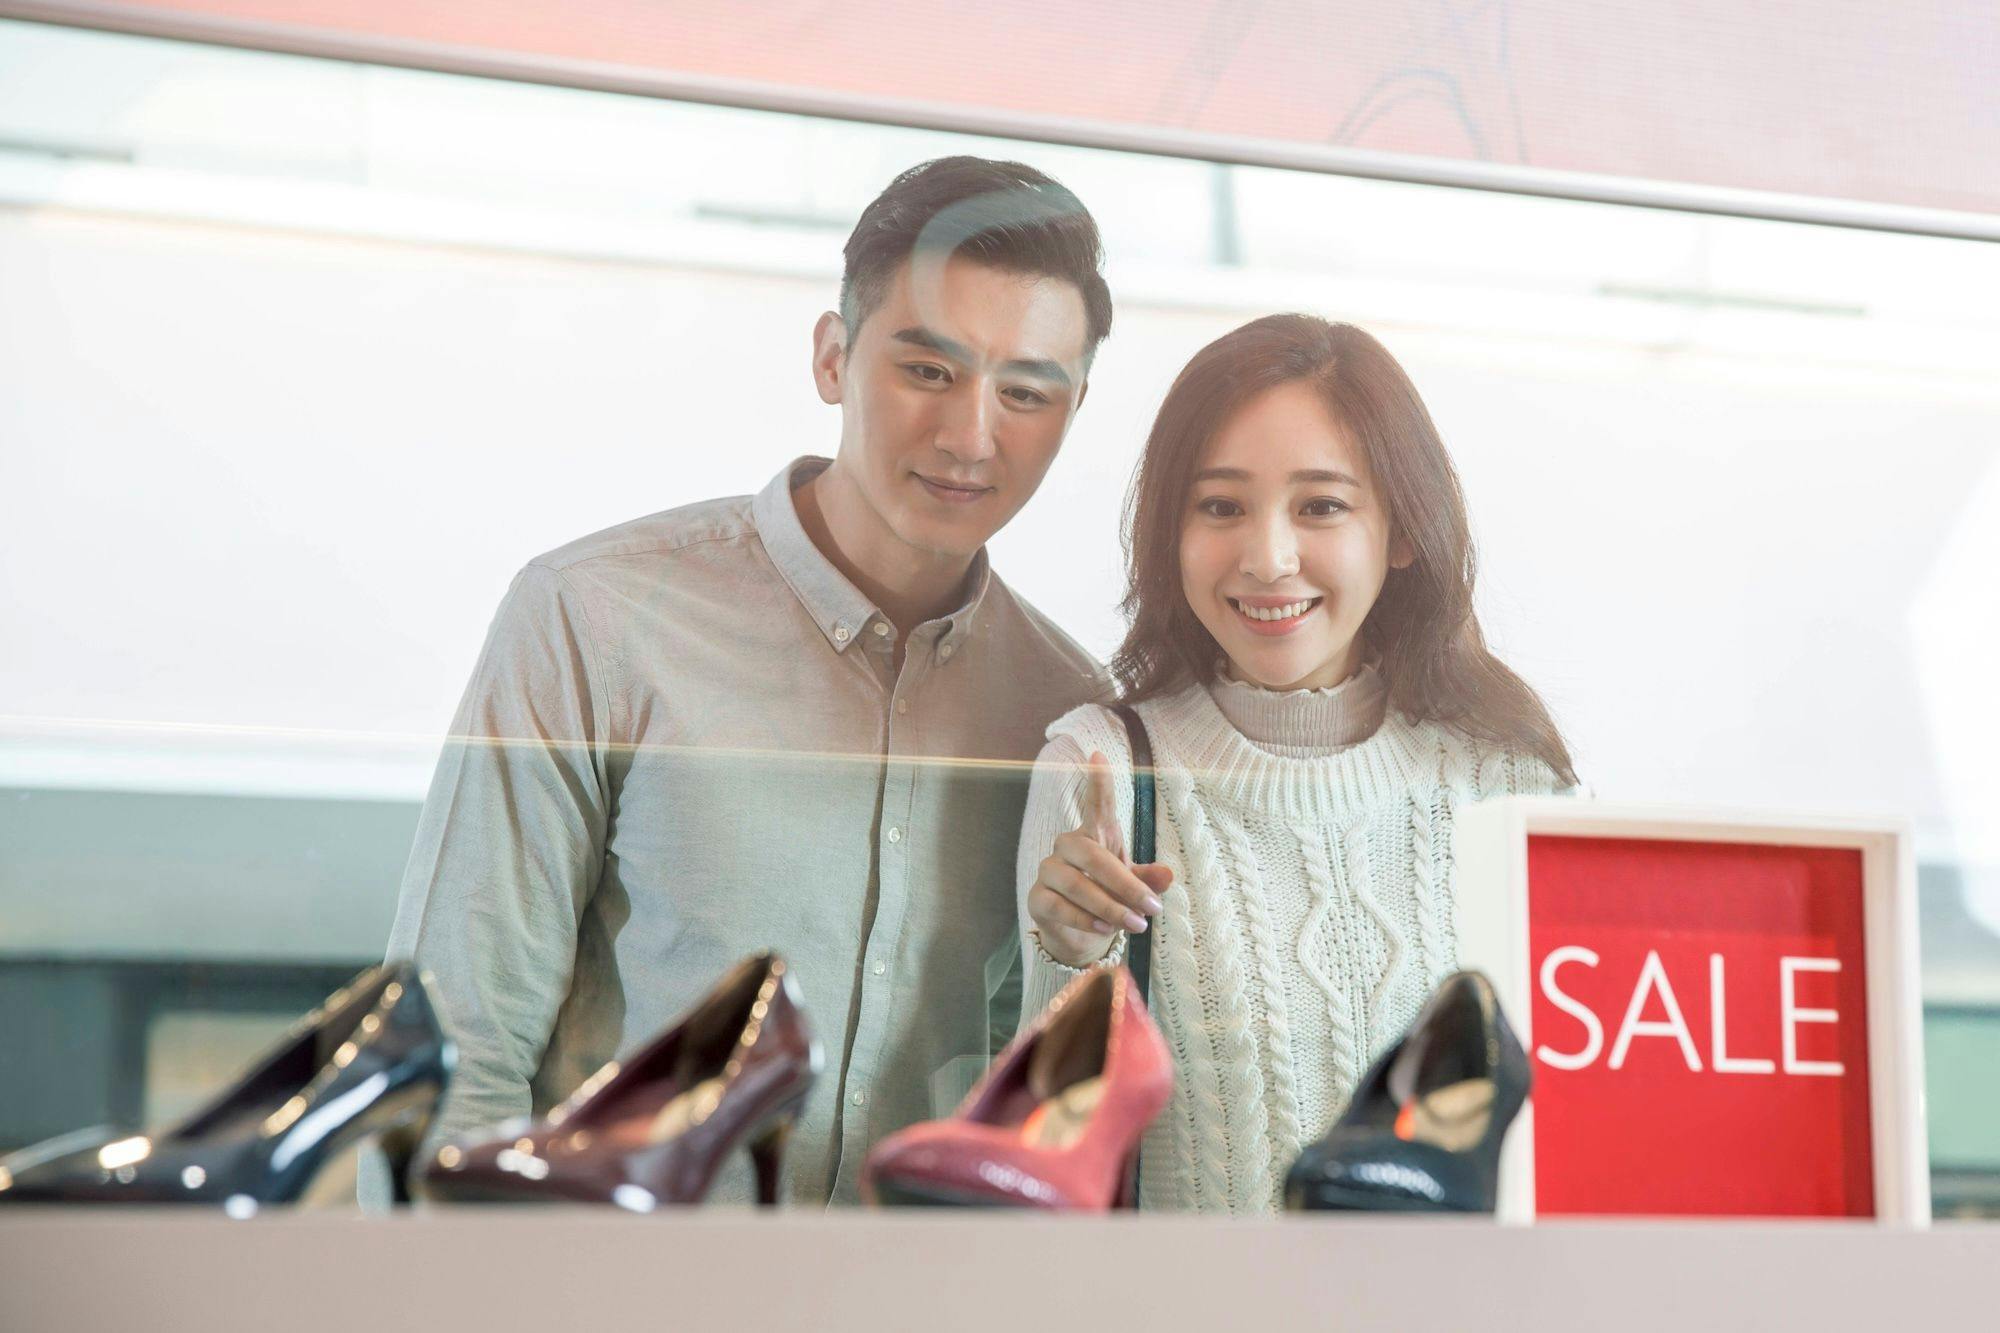 China Wirtschaft, Konsum, Shopping, Konsumverhalten: Chinesisches Paar beim Window Shopping bleibt neben einem SALE Schild stehen